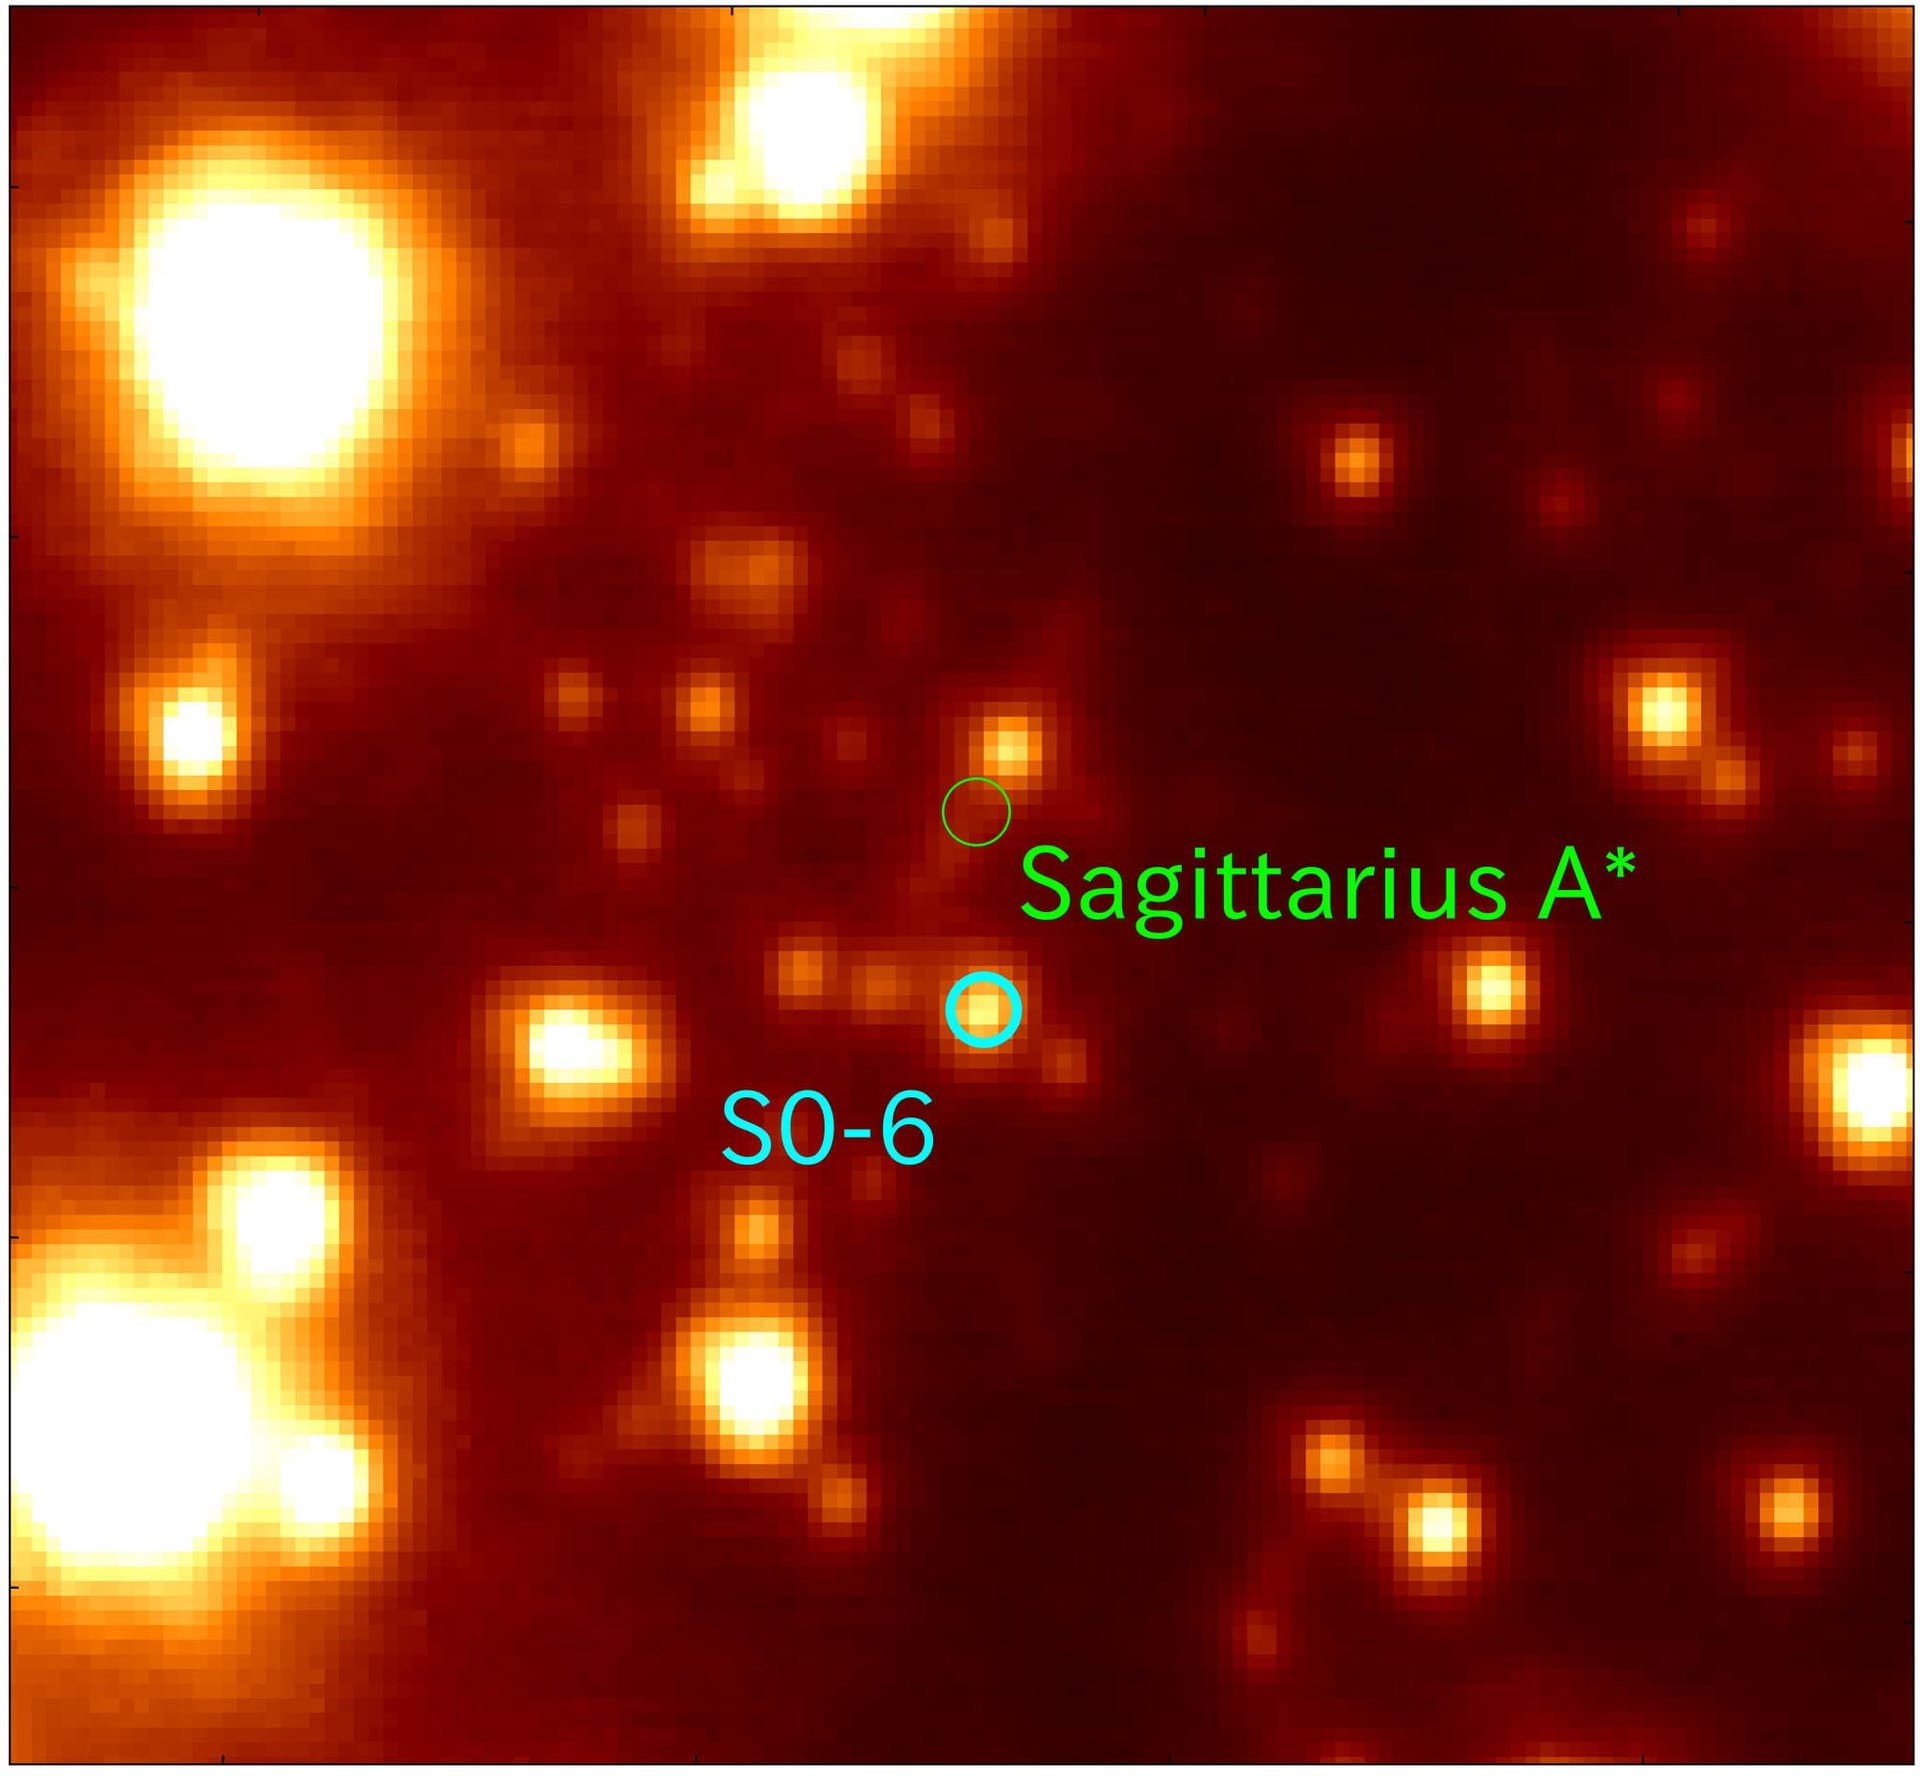 Eine Aufnahme des Subaru-Teleskops: Man sieht Sagittarius A* und S0-6 in dessen Nähe.